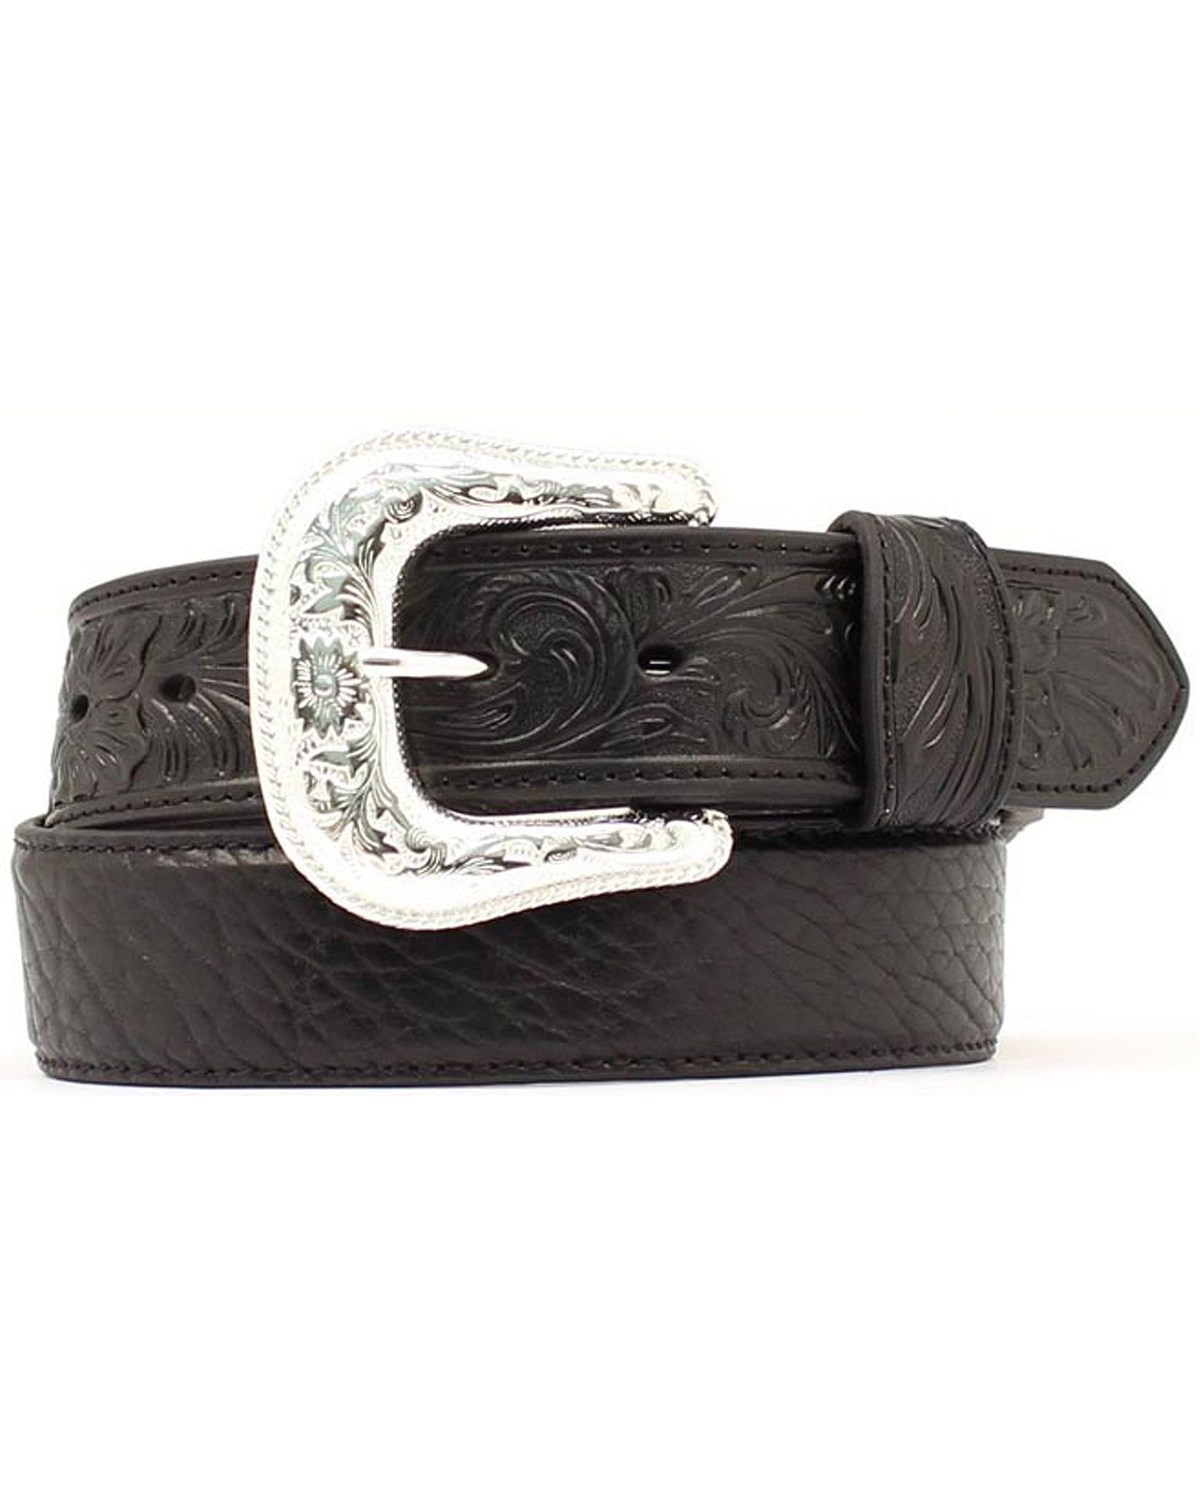 Nocona Bullhide & Tooled Leather Belt